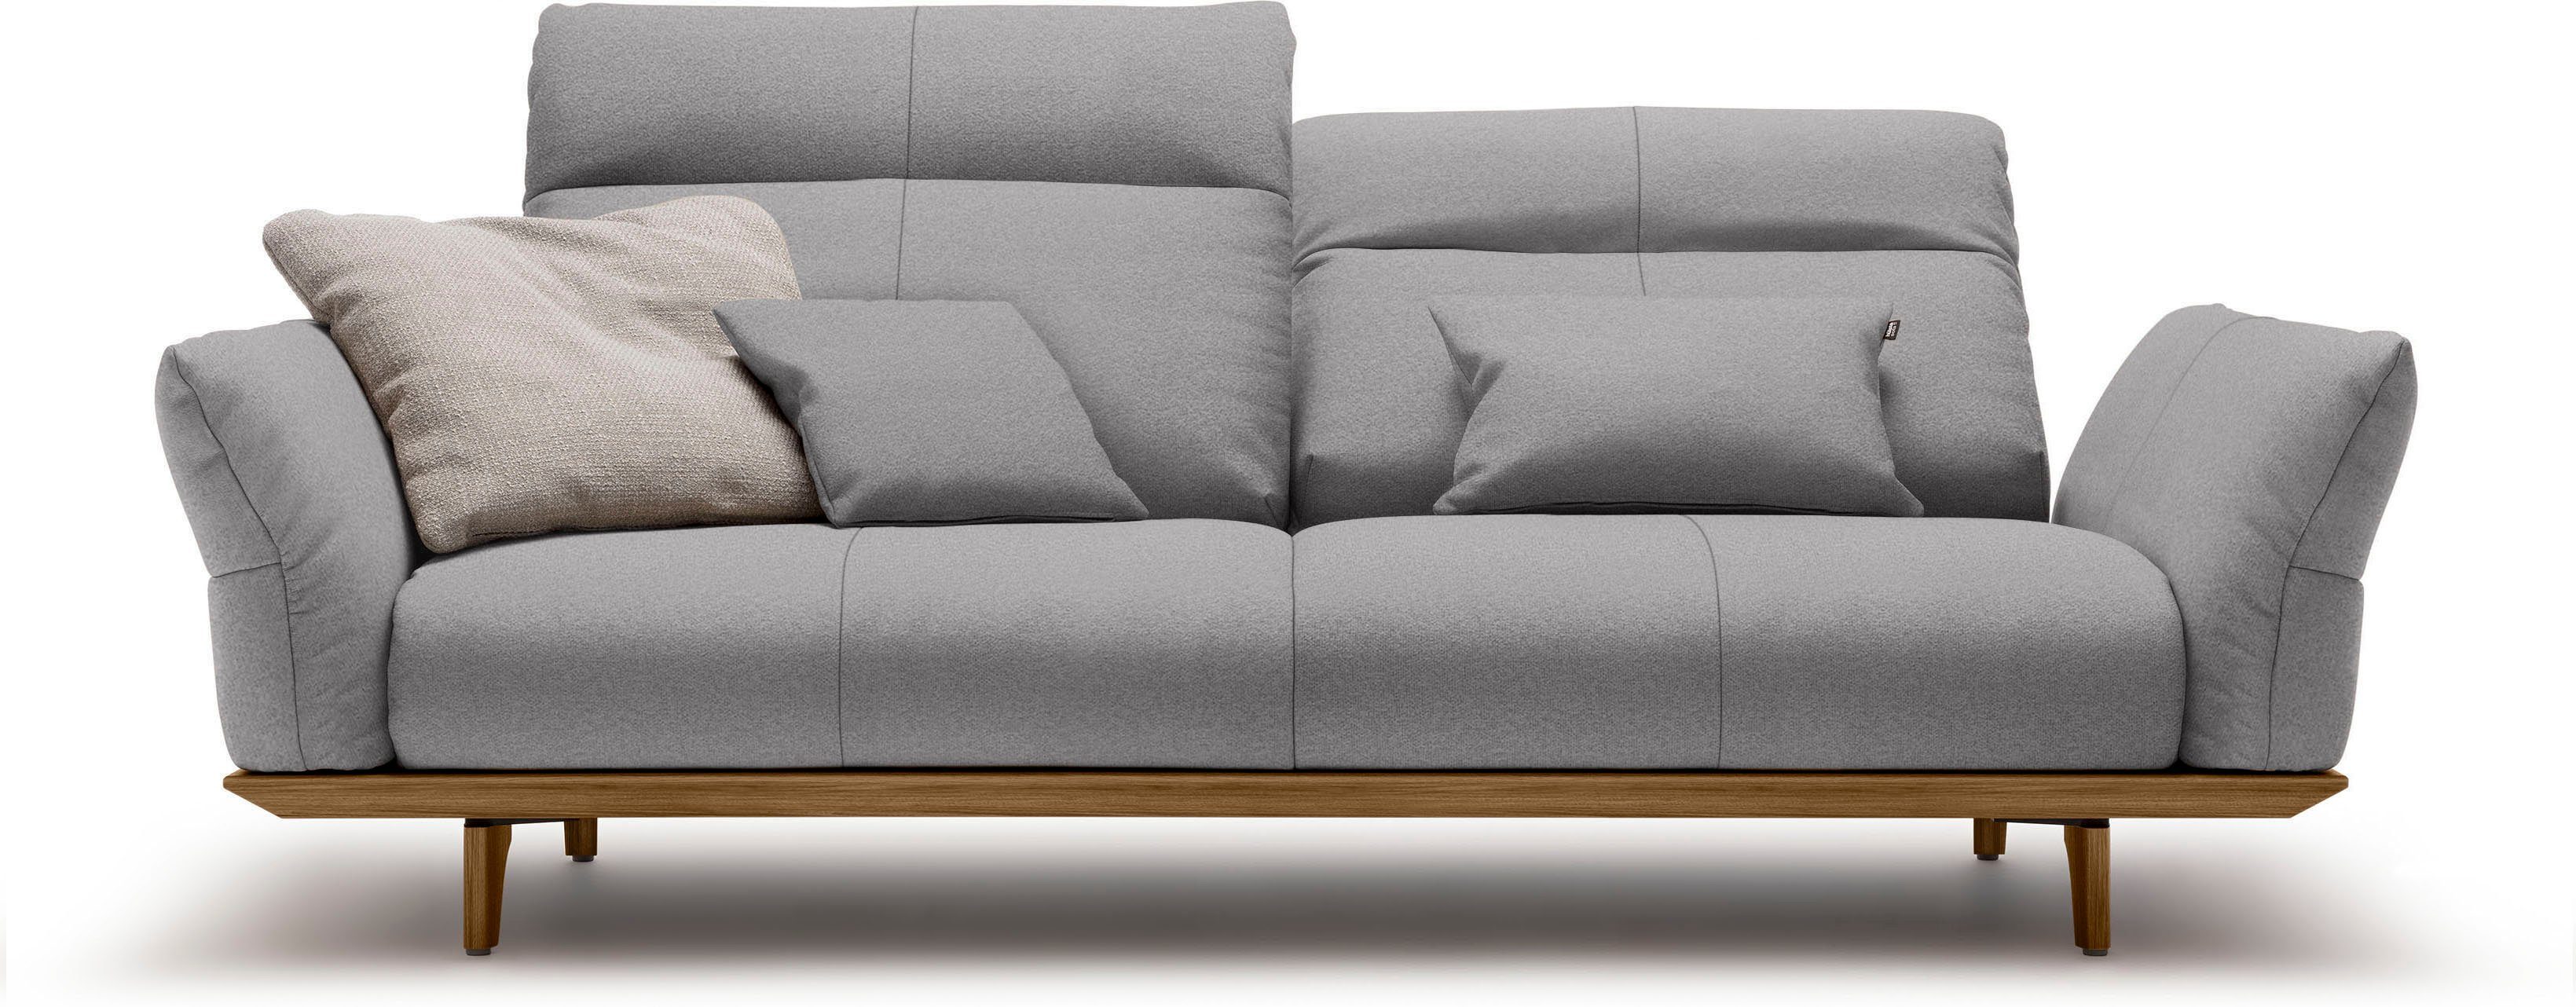 hülsta sofa 3-Sitzer hs.460, Sockel in Füße Nussbaum, cm 208 Nussbaum, Breite